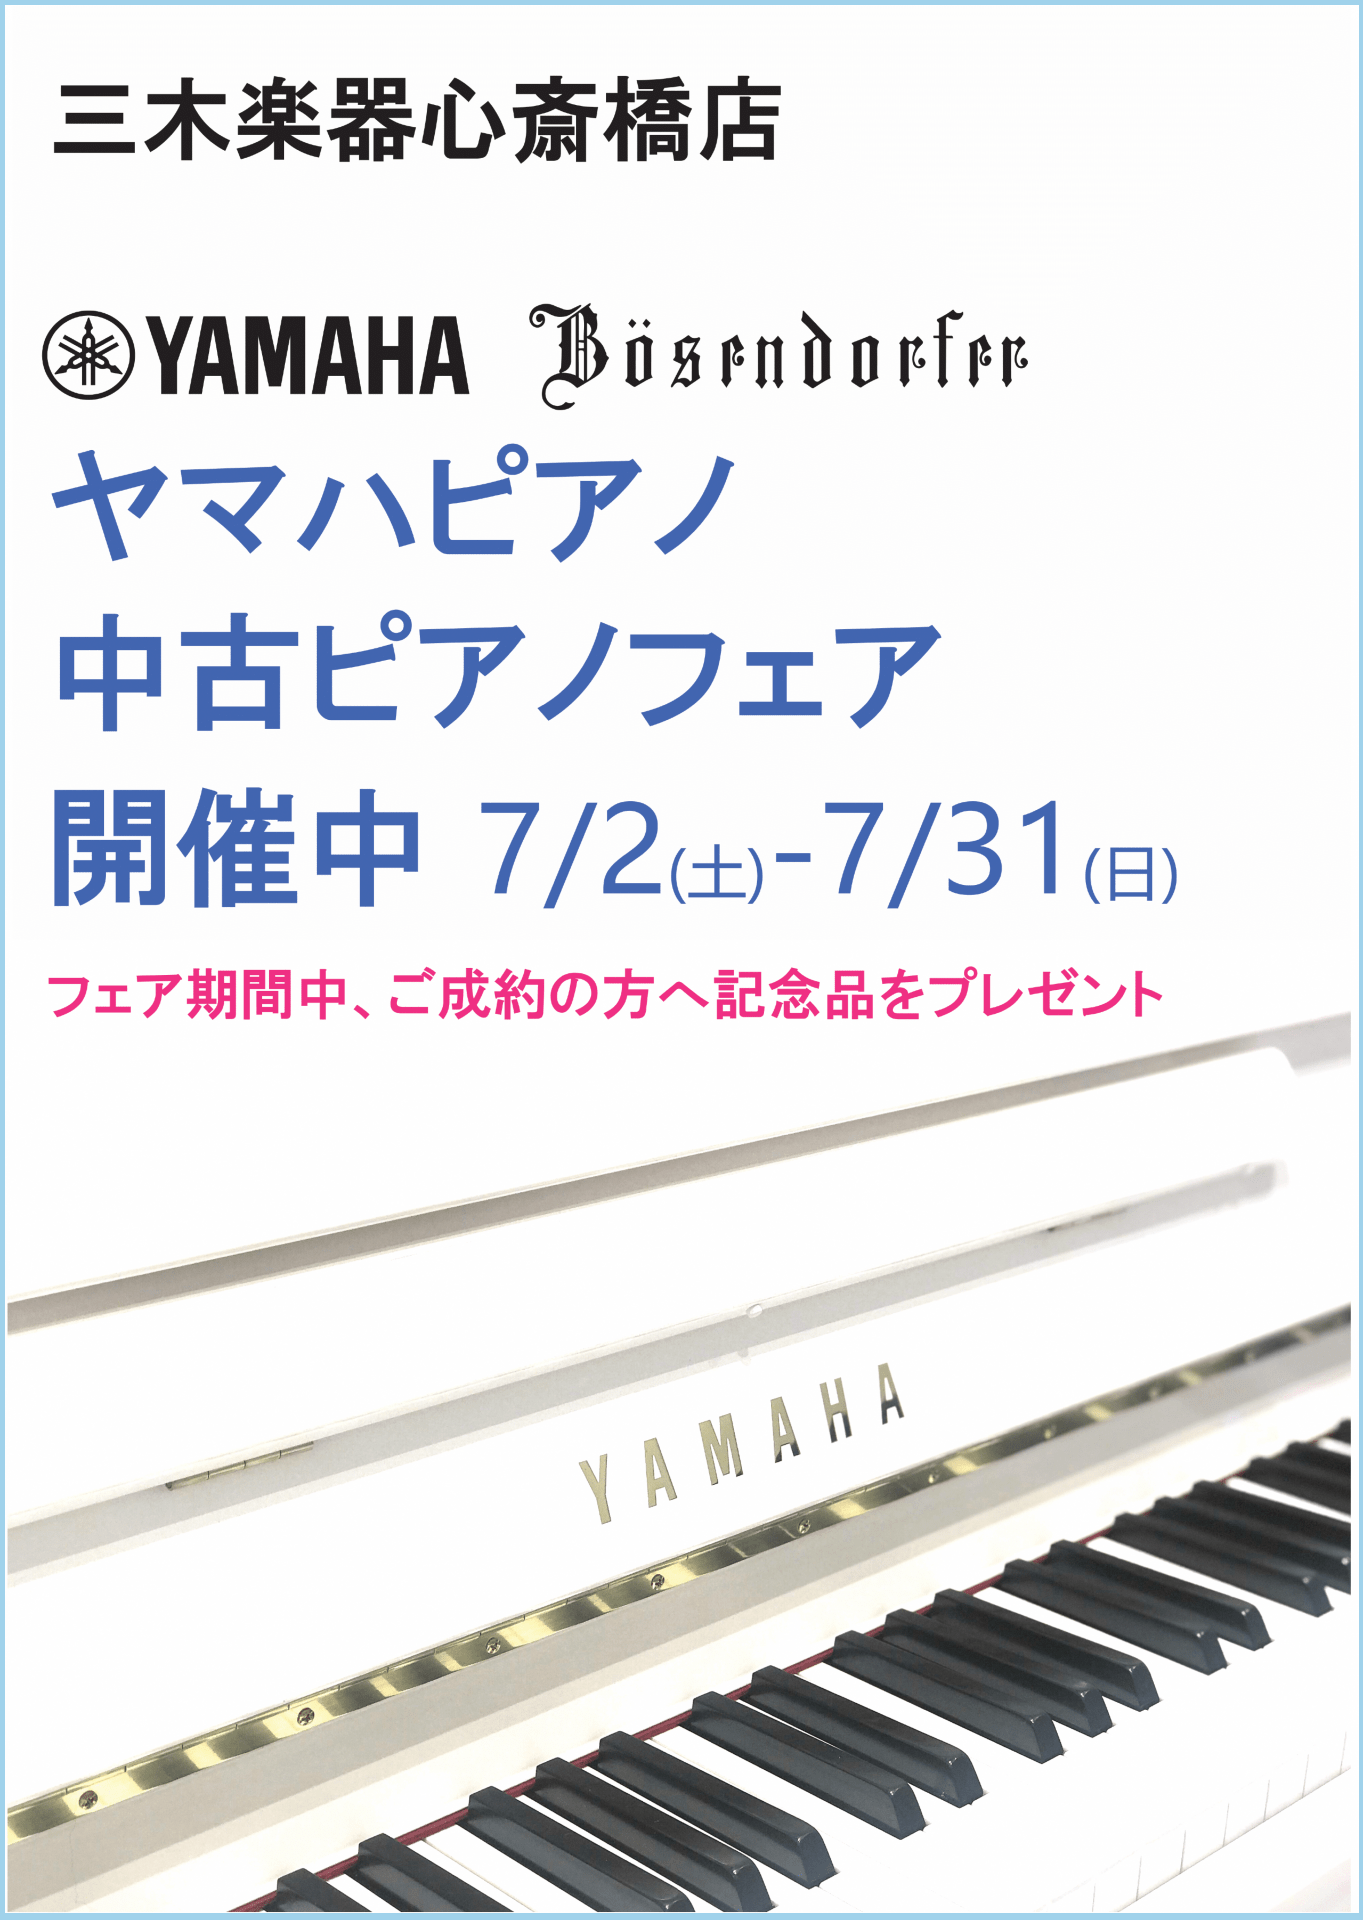 心斎橋店ヤマハピアノ・中古ピアノフェア info